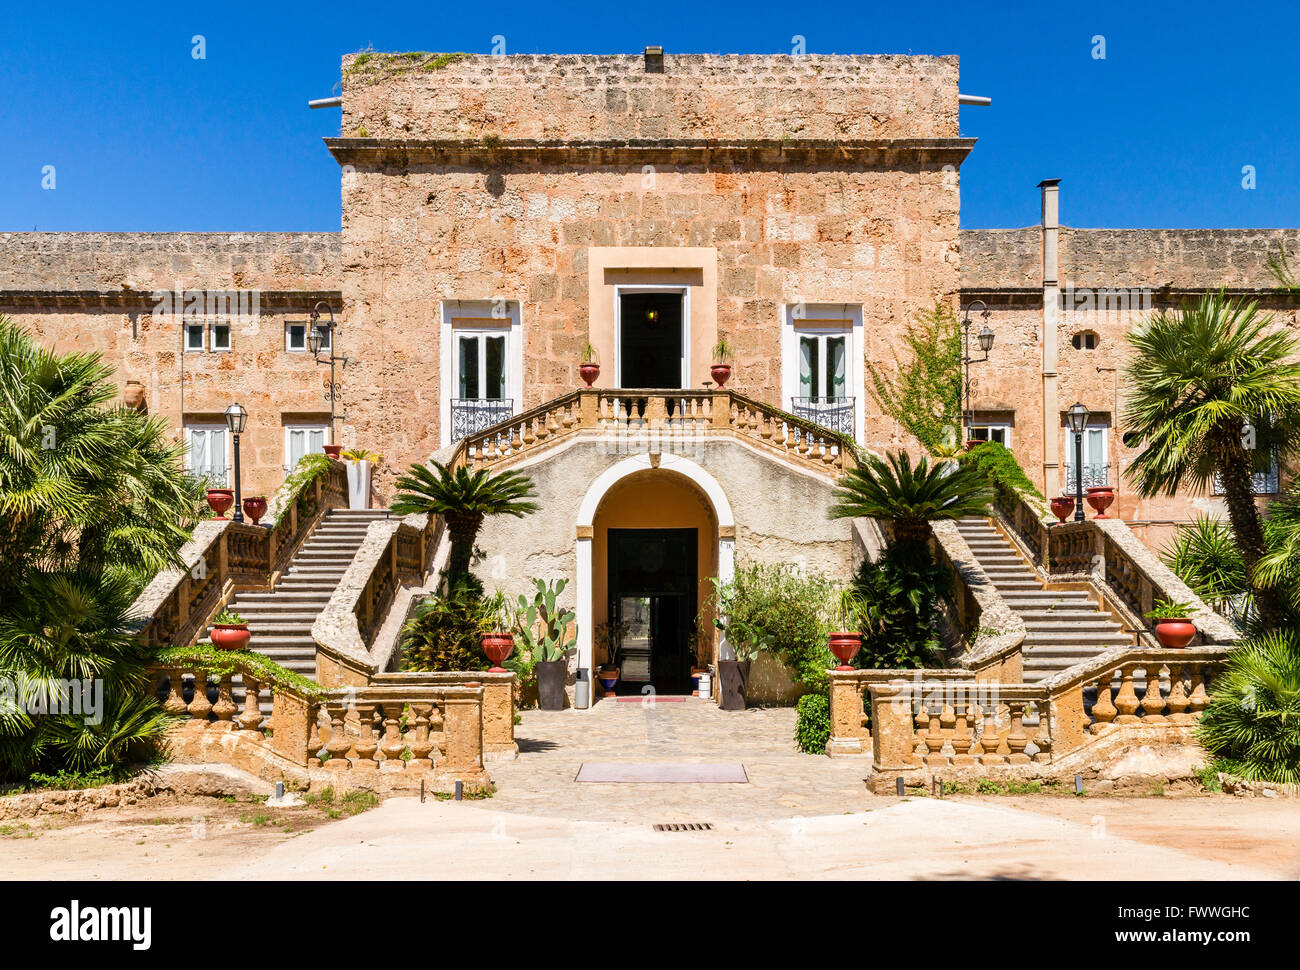 Villa Boscogrande, location of The Leopard or Il Gattopardo by Luchino Visconti, Palermo, Province of Palermo, Sicily, Italy Stock Photo